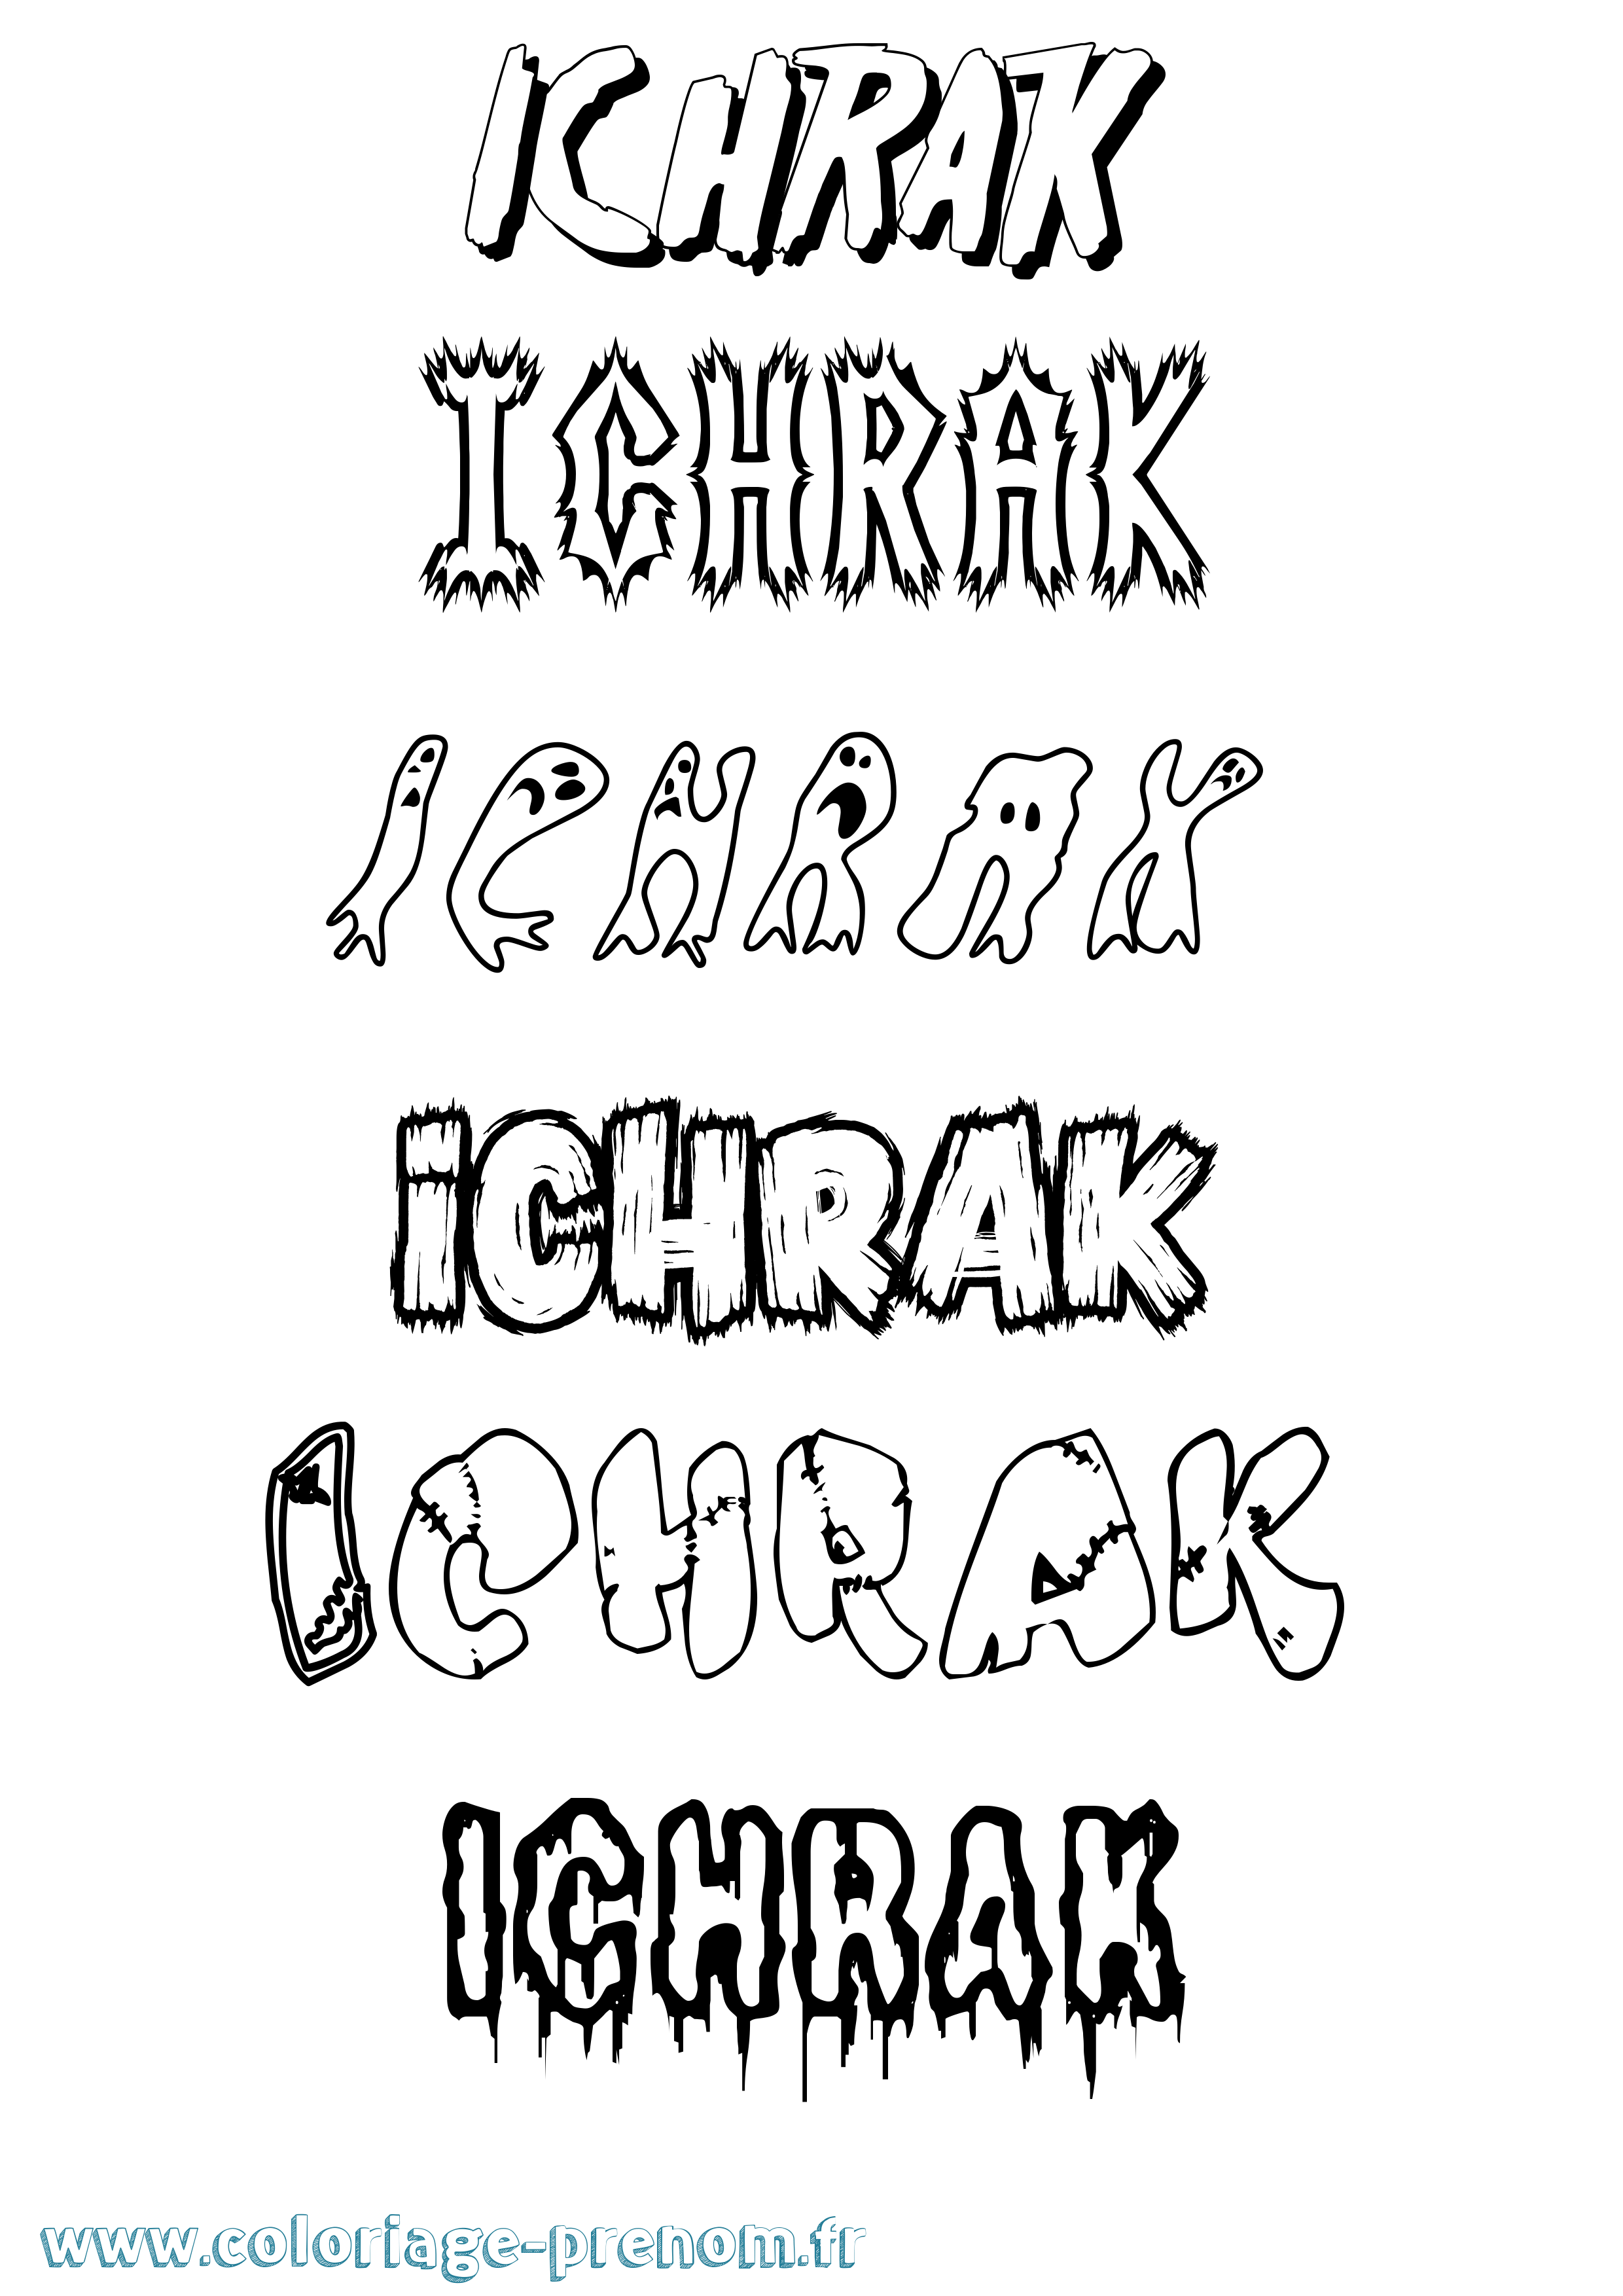 Coloriage prénom Ichrak Frisson